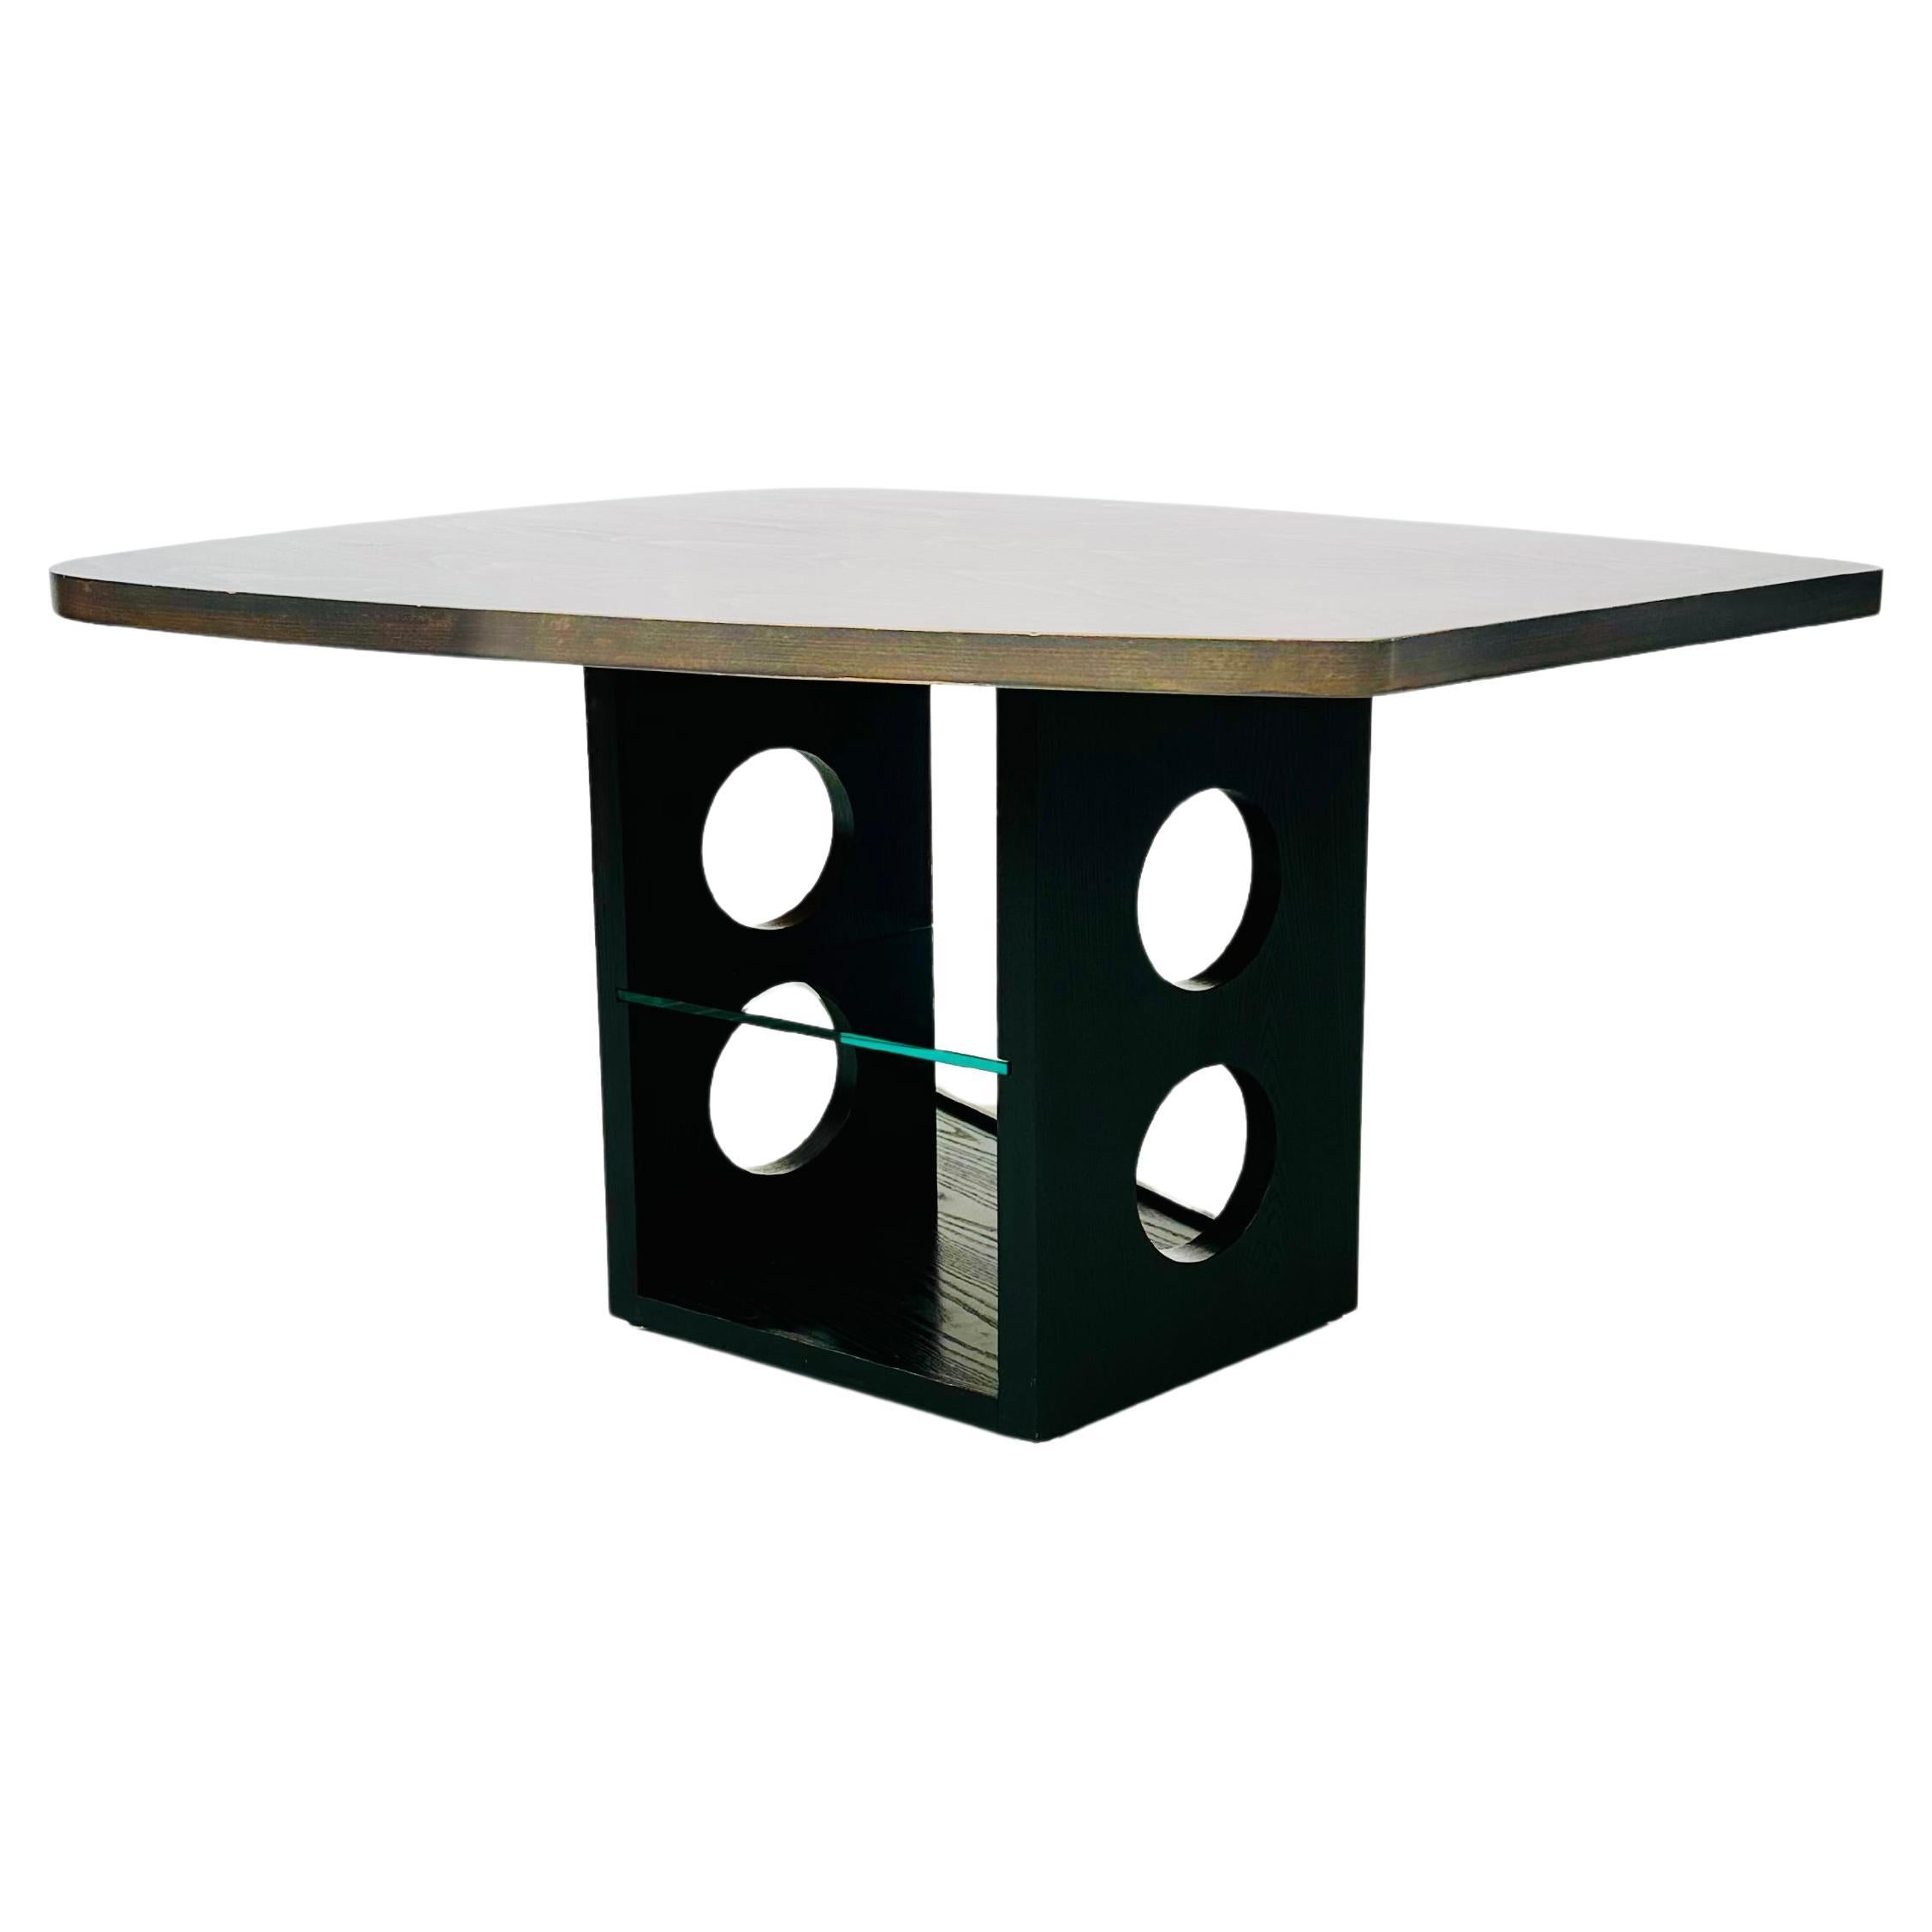 Besonderer Tisch durch sein anspruchsvolles Design. Die Tischplatte hat die Form einer Palette und wurde um 1940 von Jean Prouve erfunden. Vierzig Jahre später, in den 1980er Jahren, entwickelte das Tecta-Team den skulpturalen Sockel. Dies geschah